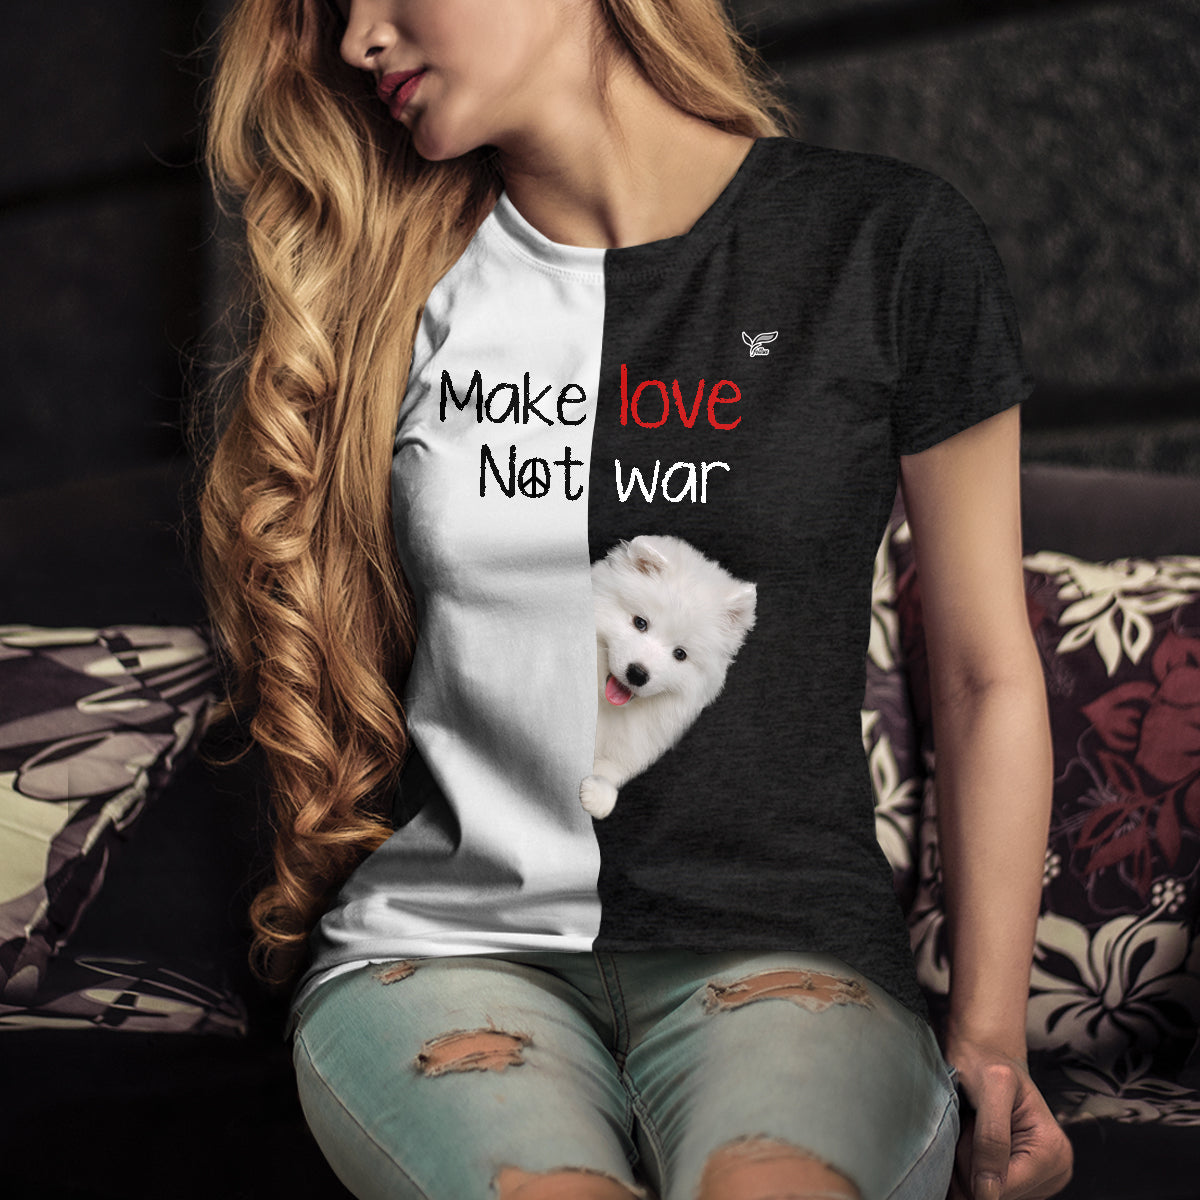 Faites l'amour, pas la guerre - T-Shirt Samoyède V1